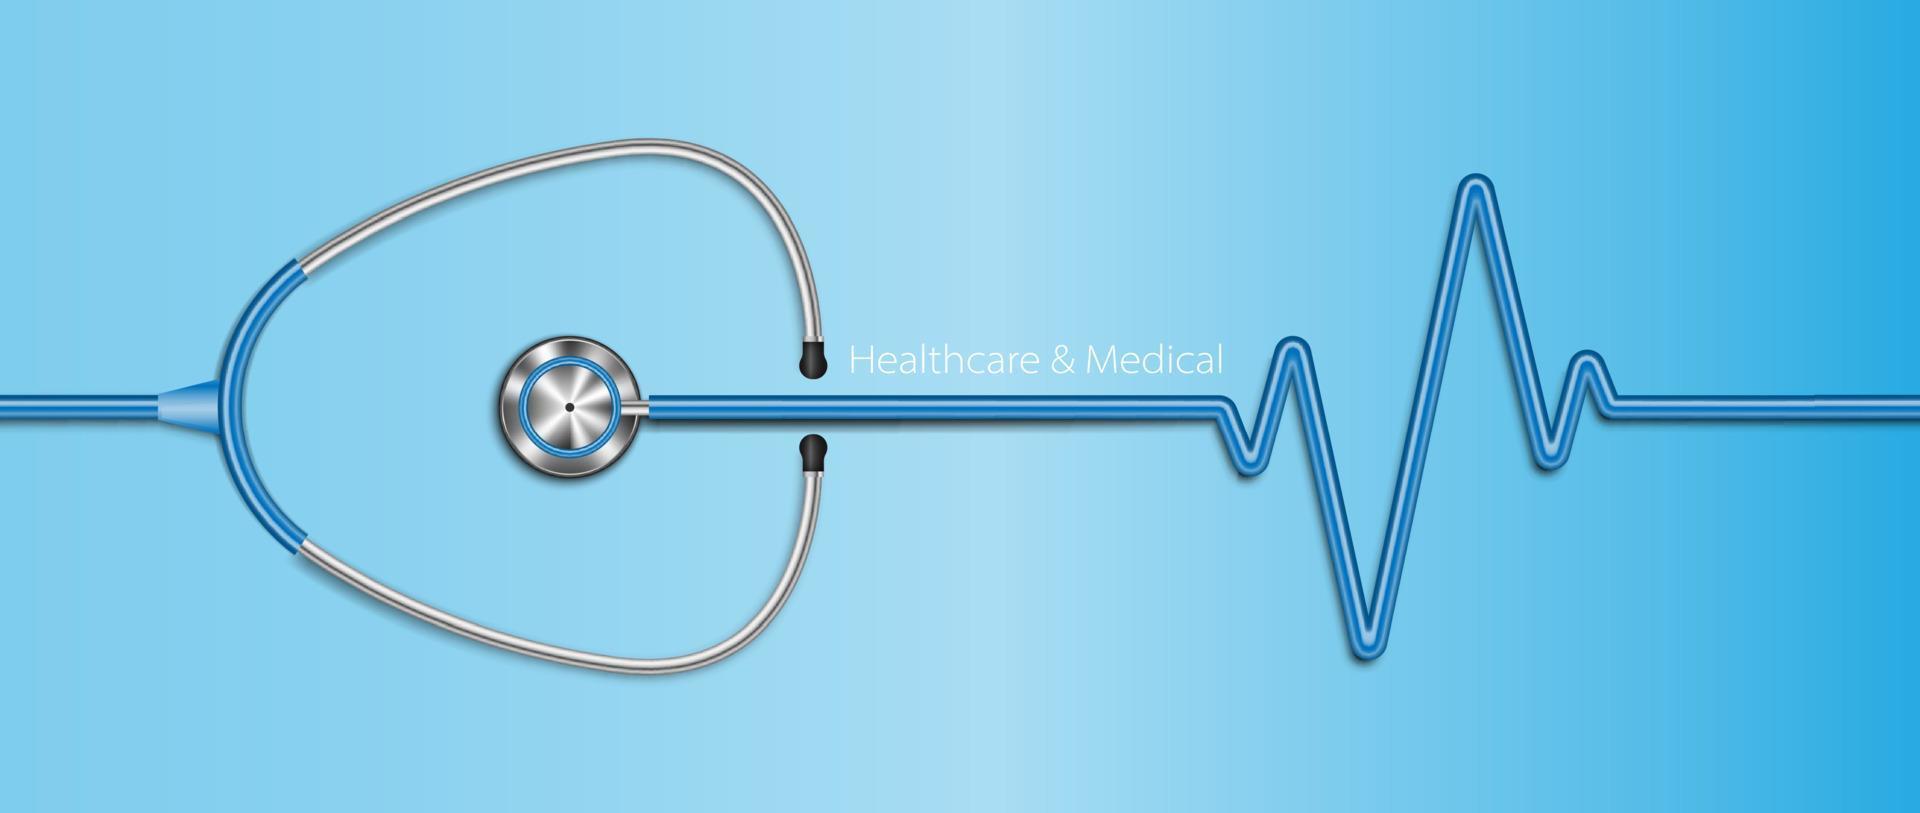 sfondo sanitario realistico dello stetoscopio, concetto di assistenza sanitaria, illustrazione vettoriale